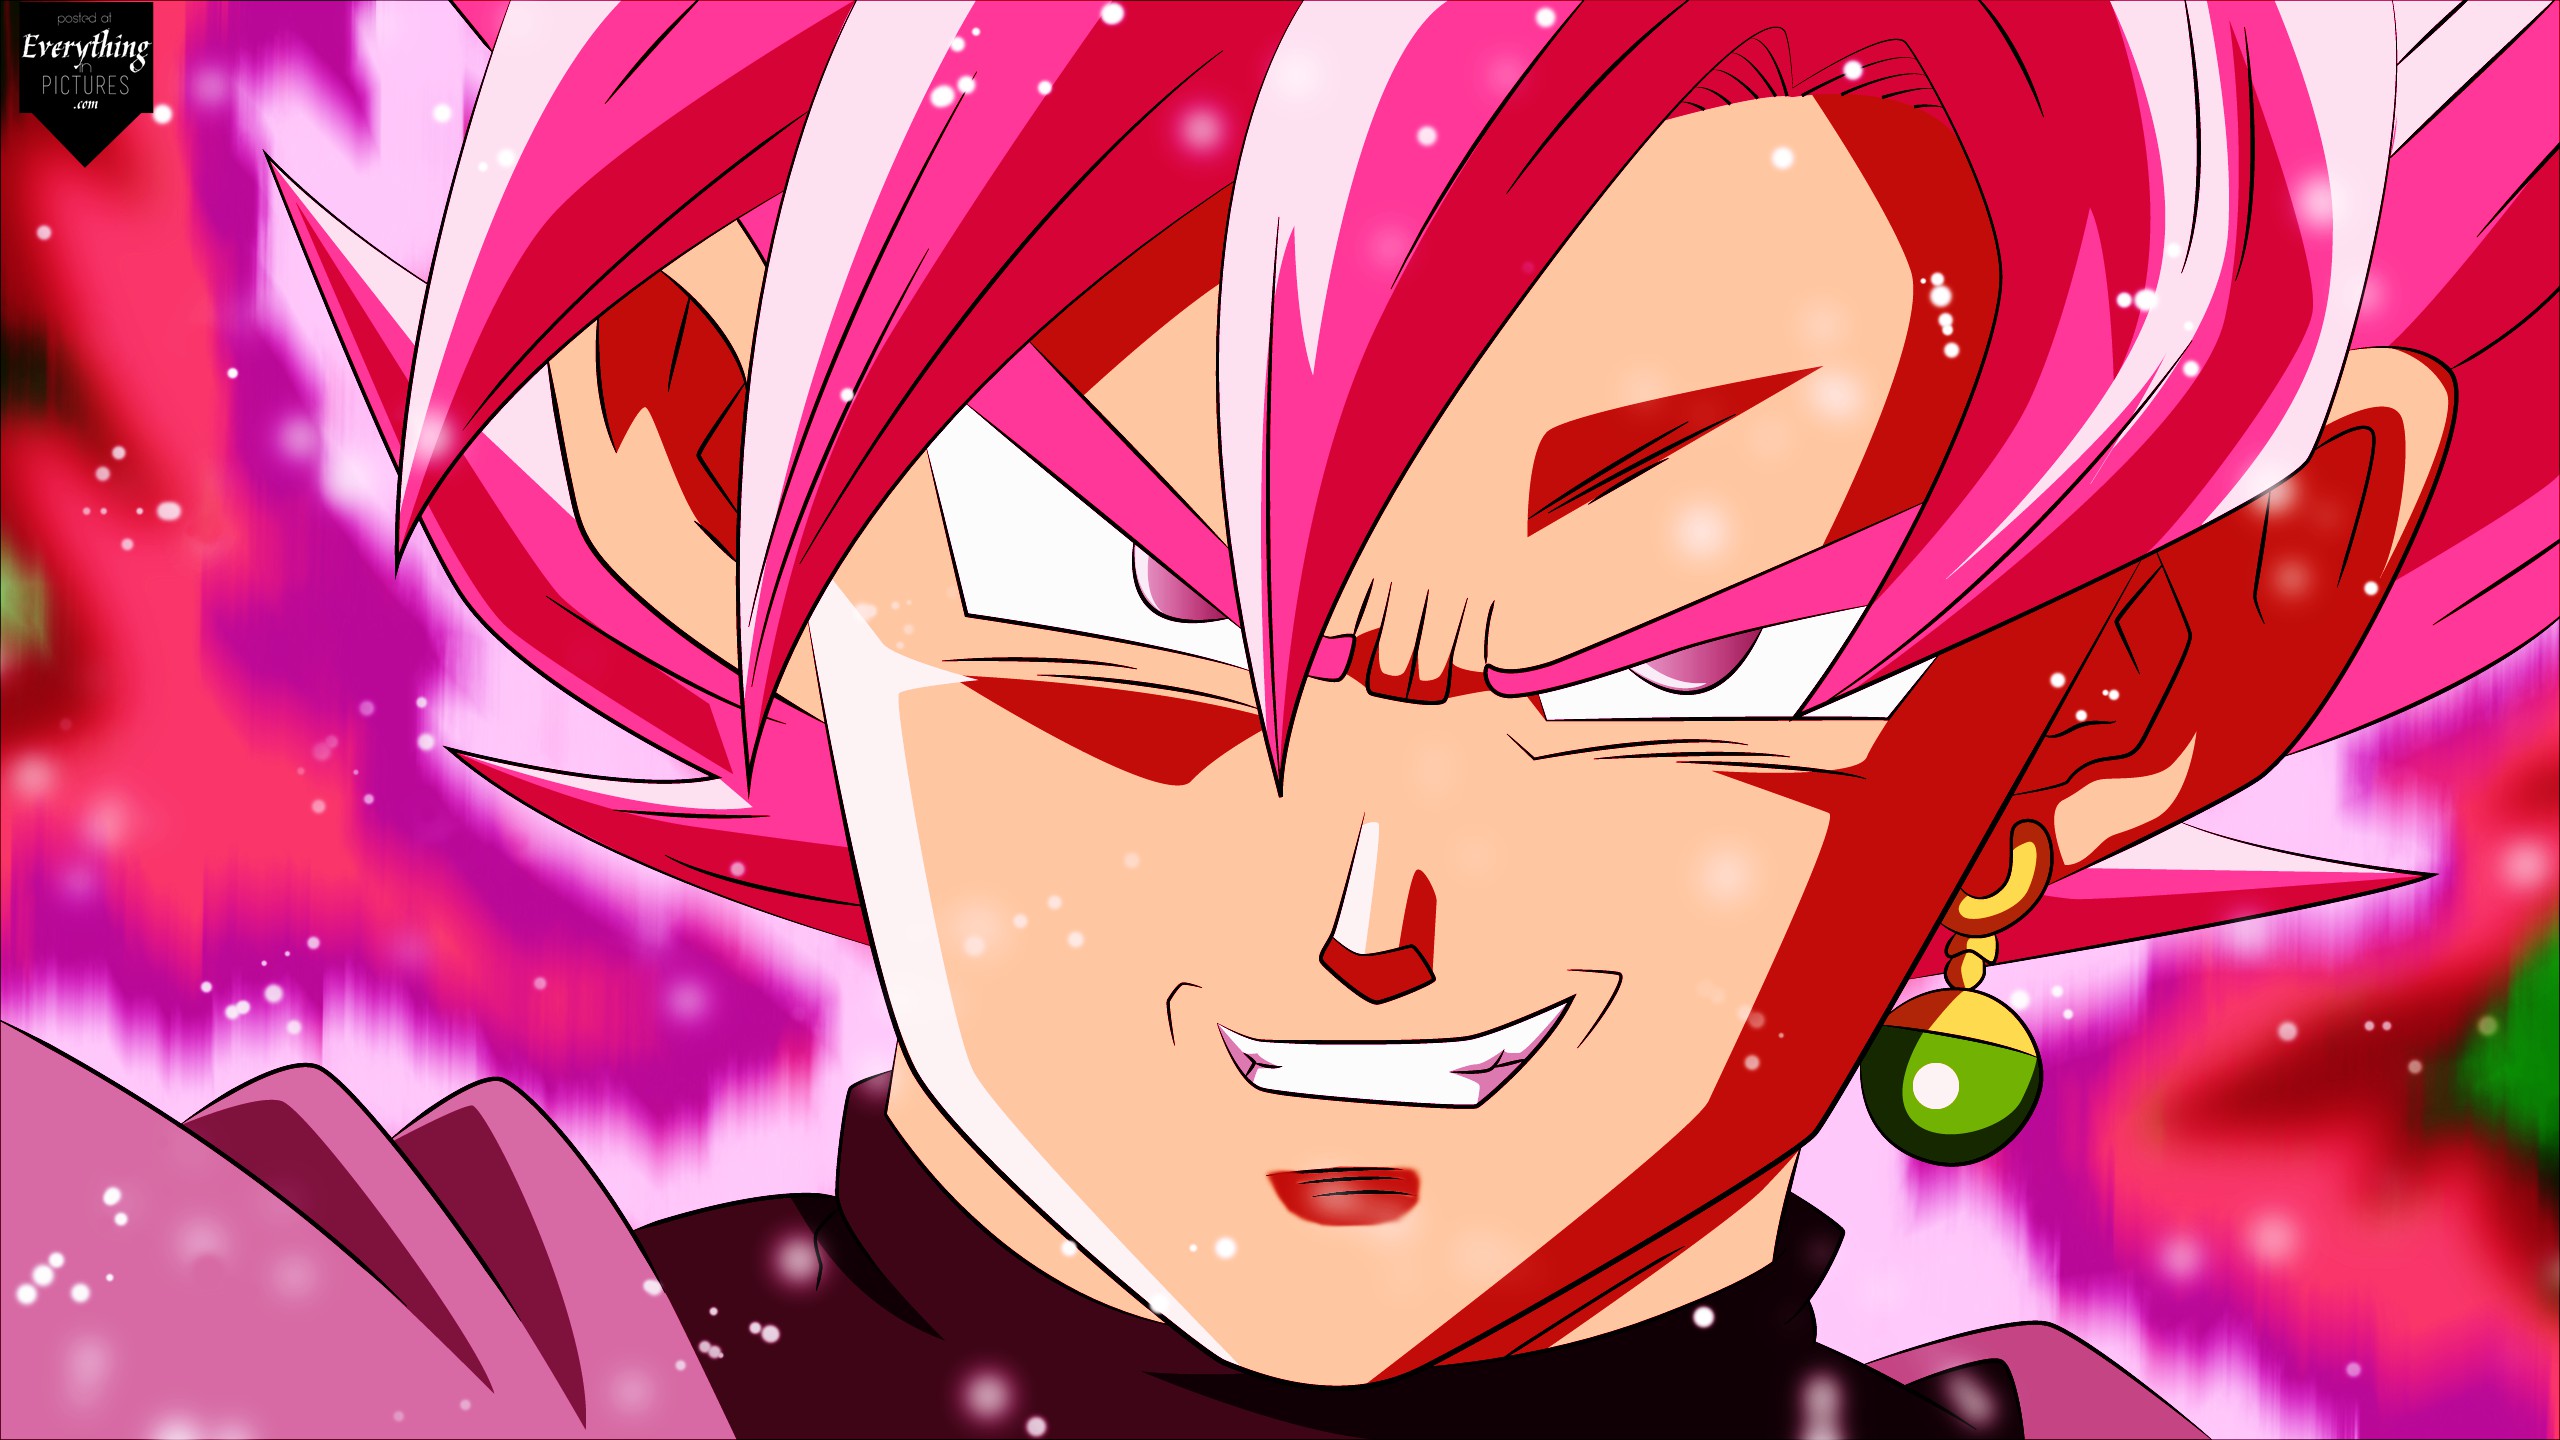 Goku Siêu Xay-da tóc Hồng: Hãy đến với bức ảnh người hùng siêu saiyajin Goku với kiểu tóc mới Siêu Xay-da tóc Hồng. Sức mạnh và sự nhanh nhẹn của anh ta sẽ khiến bạn phải trầm trồ và mong muốn theo đuổi sự phiêu lưu cùng anh.